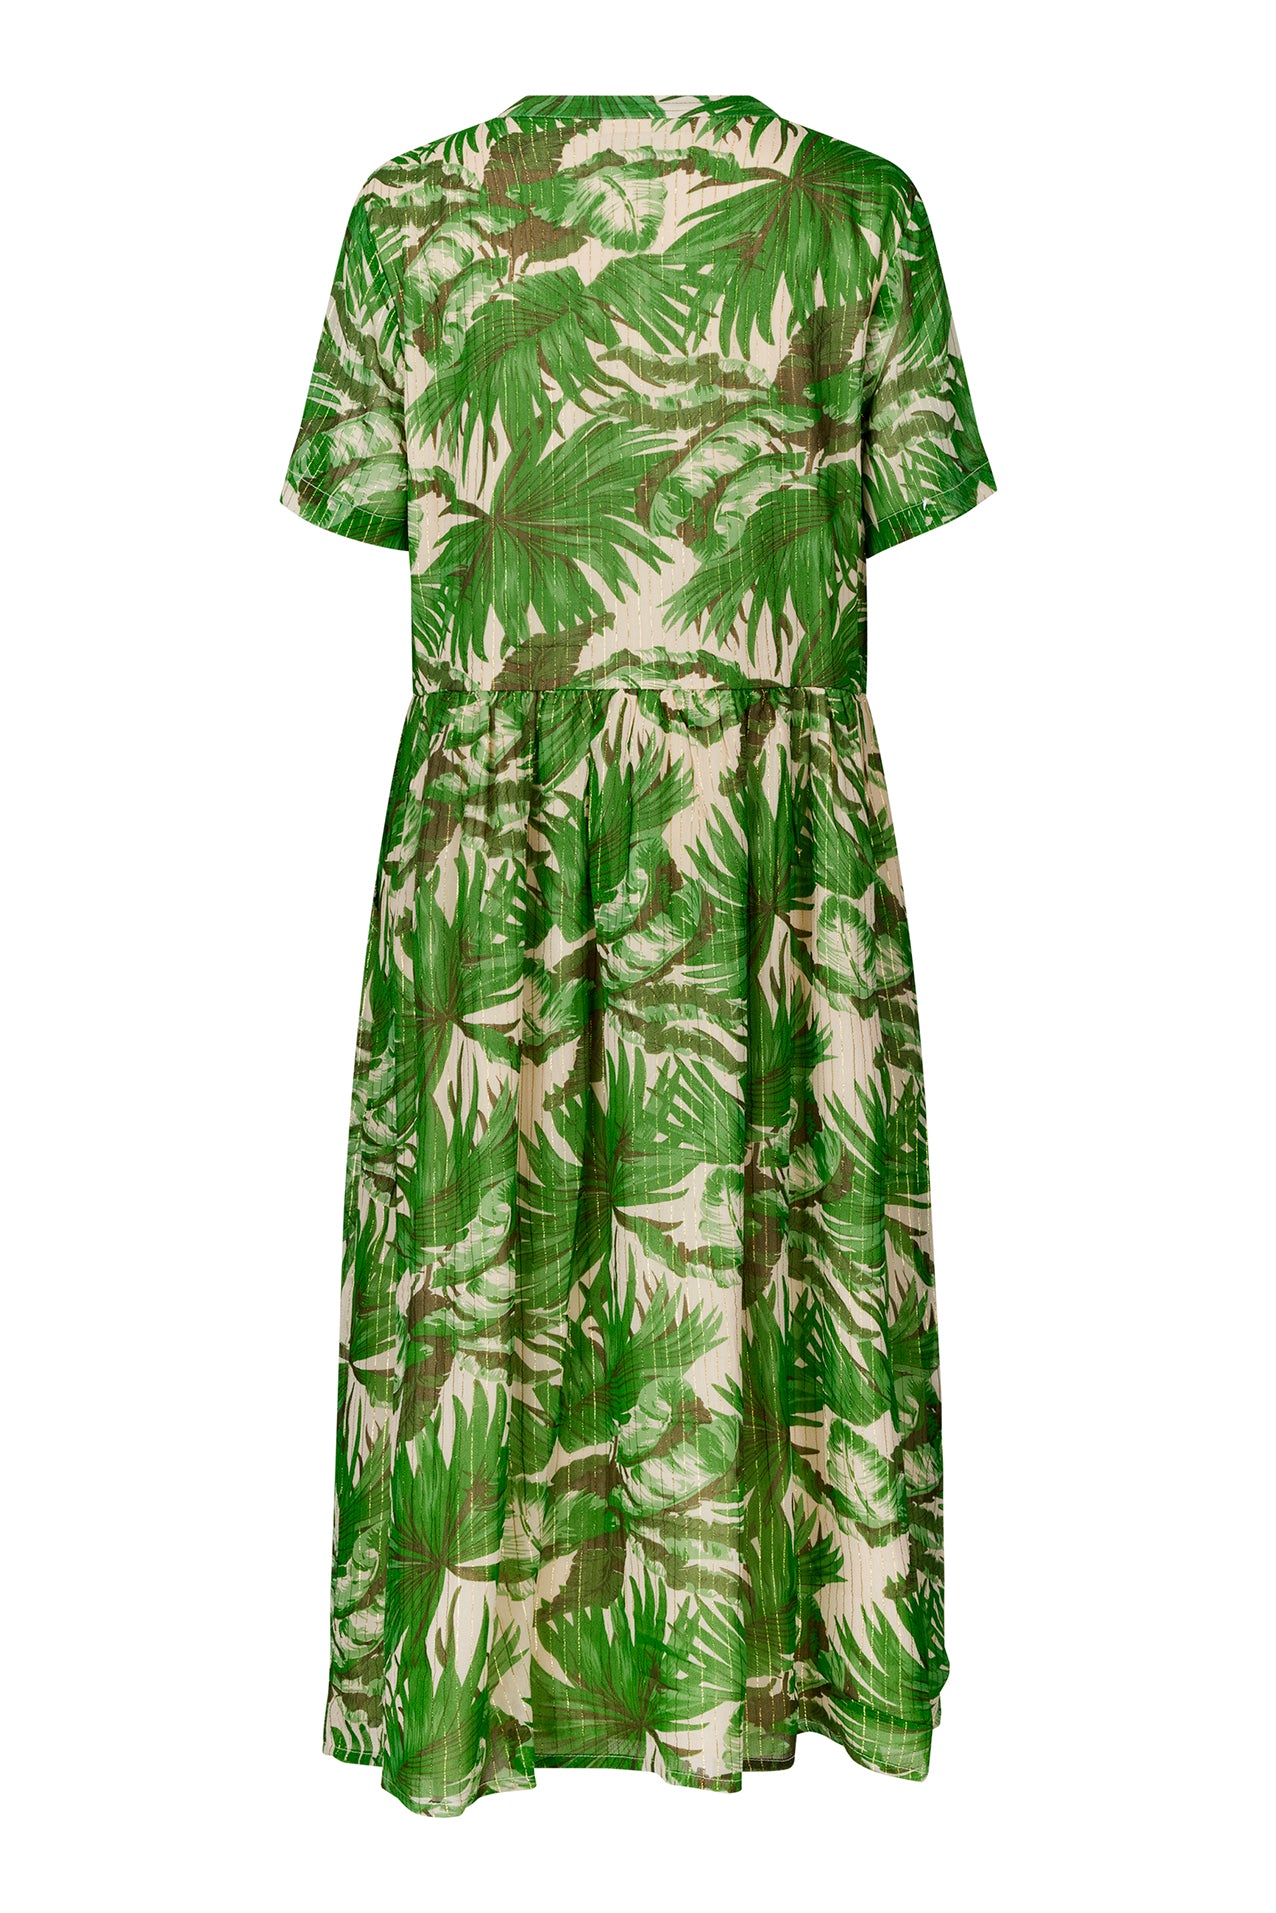 Lollys Laundry AliyaLL Midi Dress SS Dress 40 Green